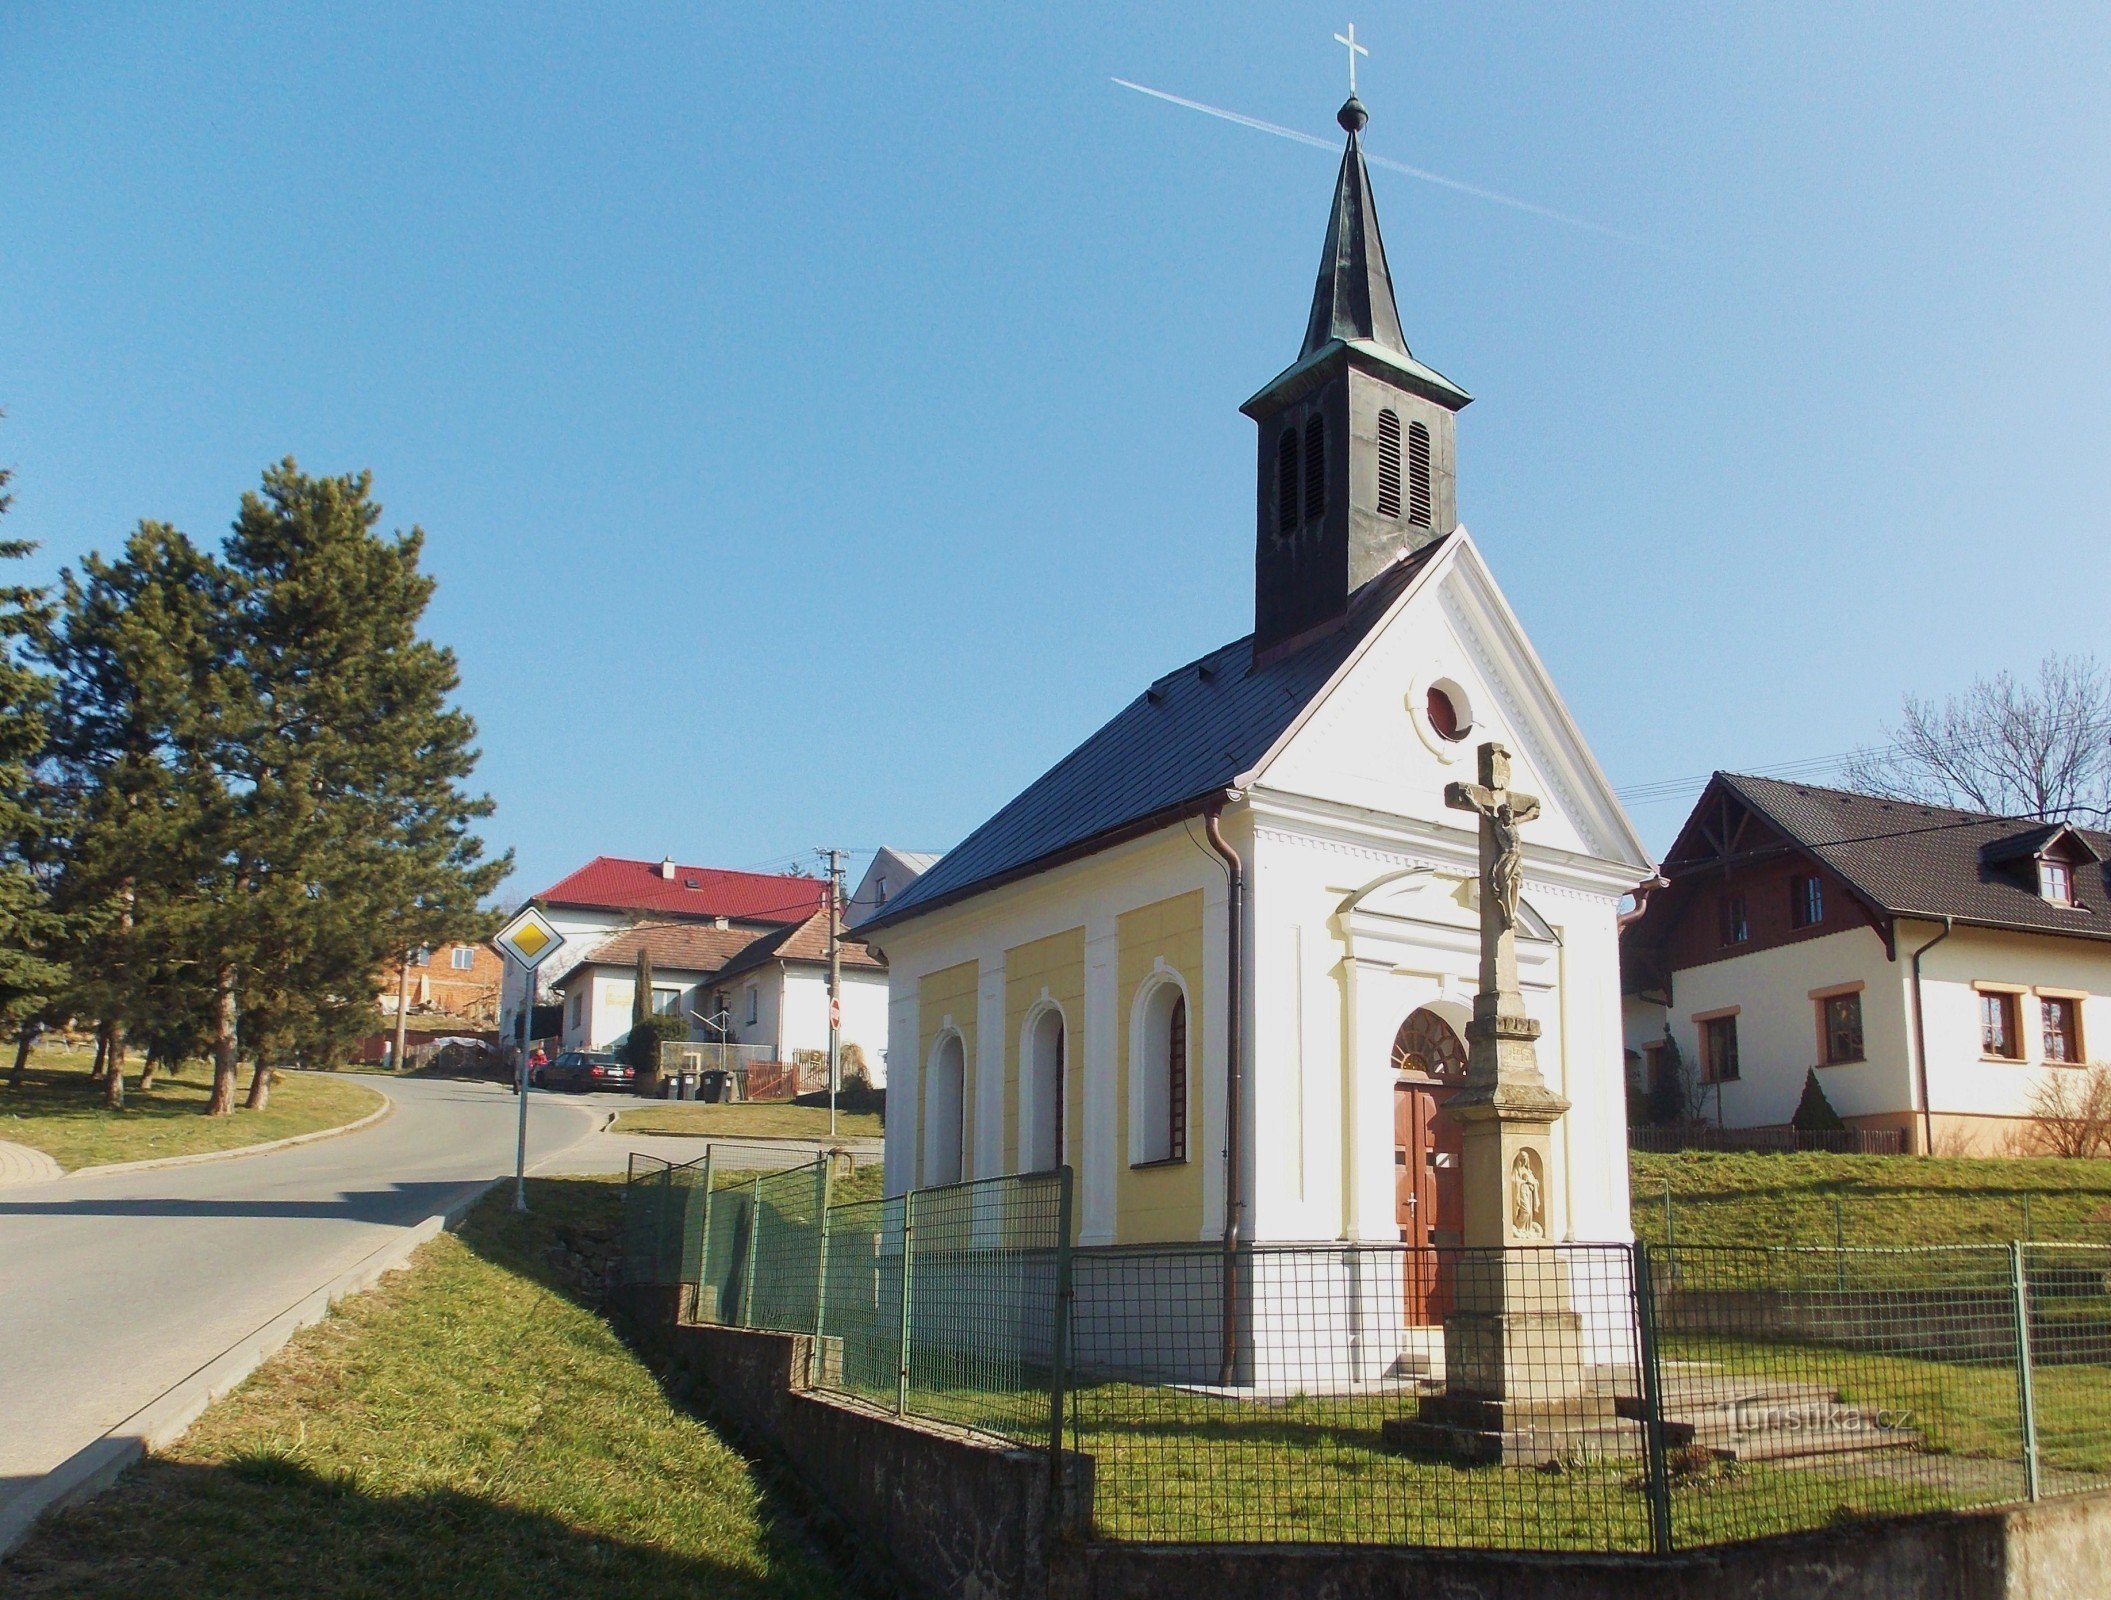 St. Martins kapel i Příluky nær Zlín